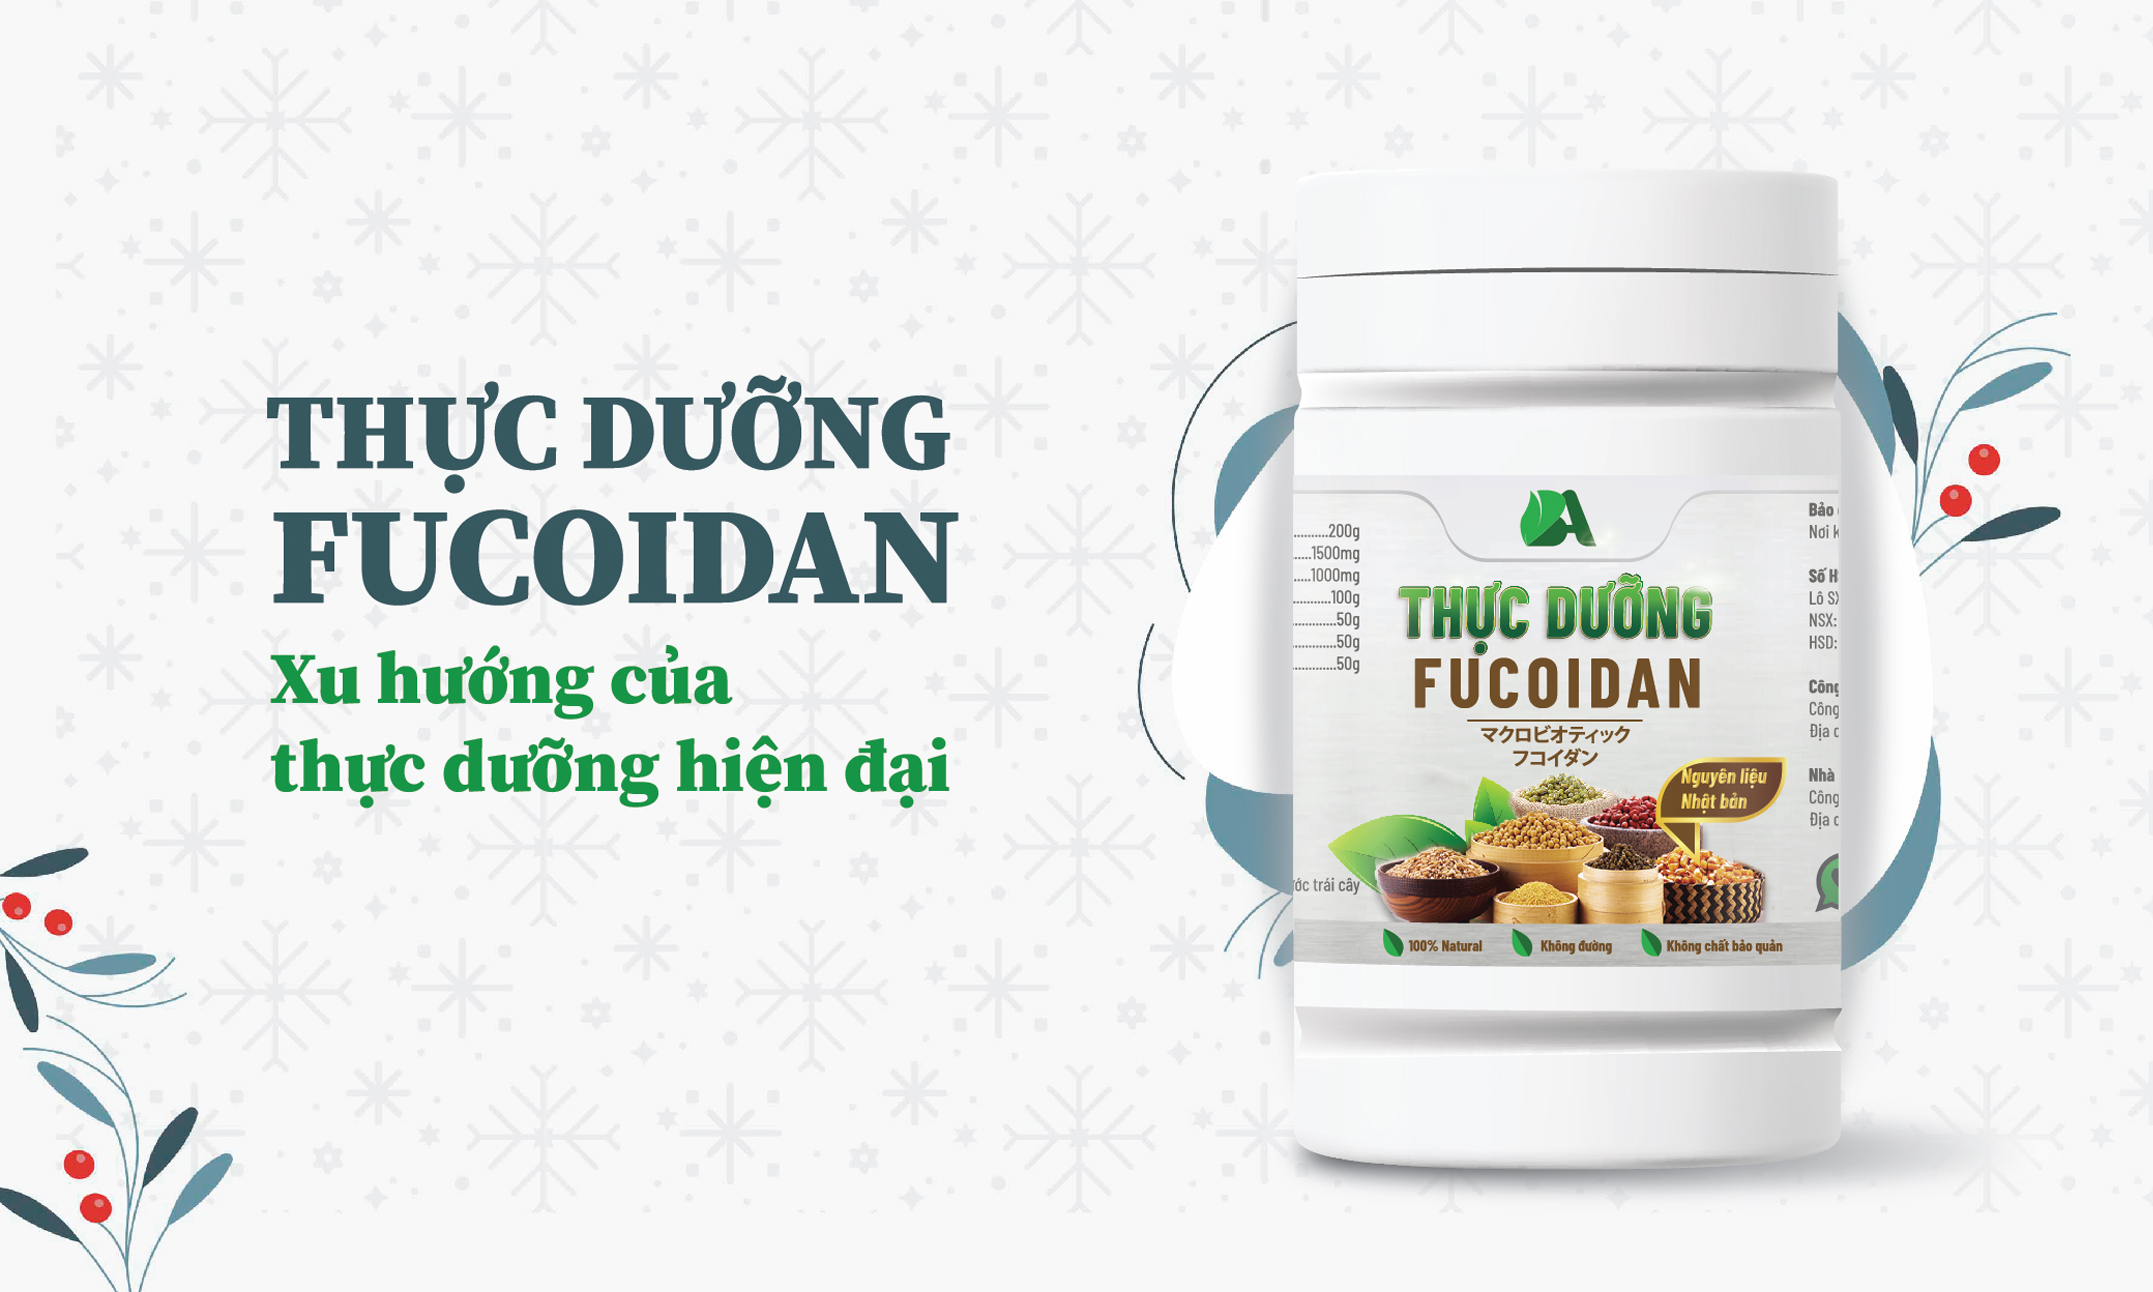 Thực dưỡng Fucoidan - Xu hướng mới của thực dưỡng hiện đại